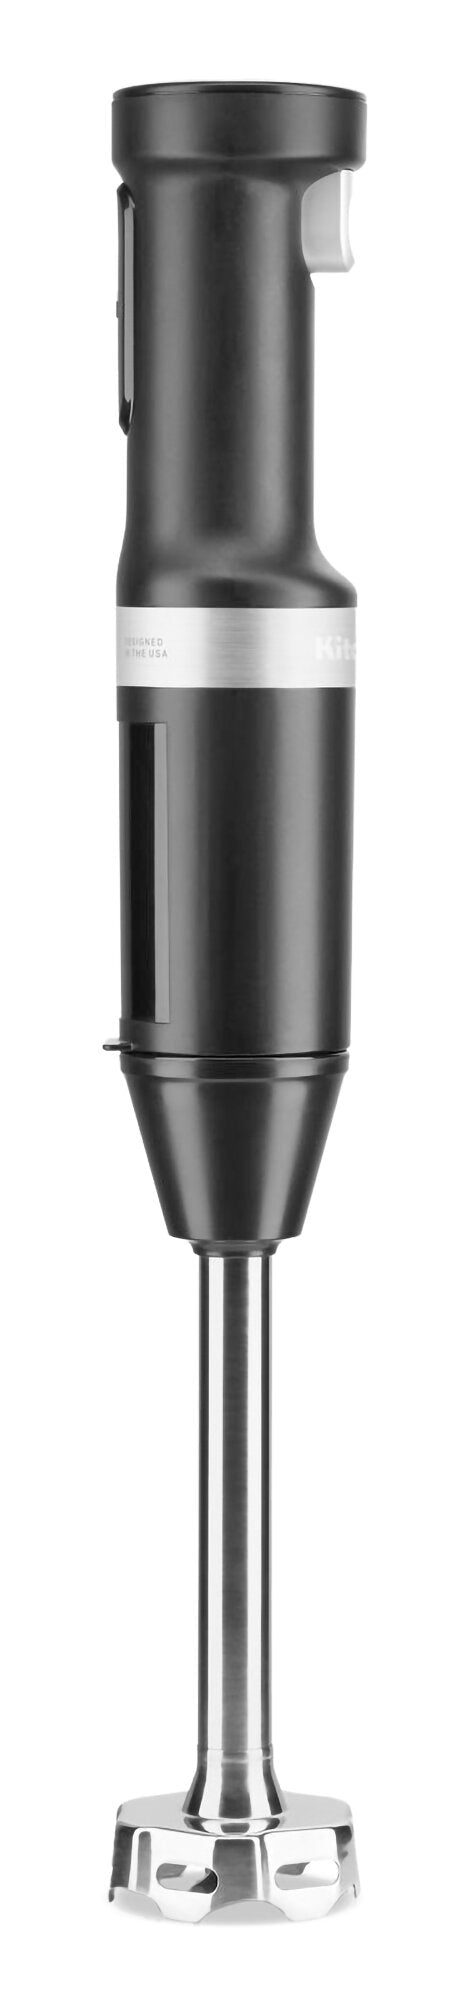 Cordless Variable Speed Hand Blender Black Matte KHBBV53BM